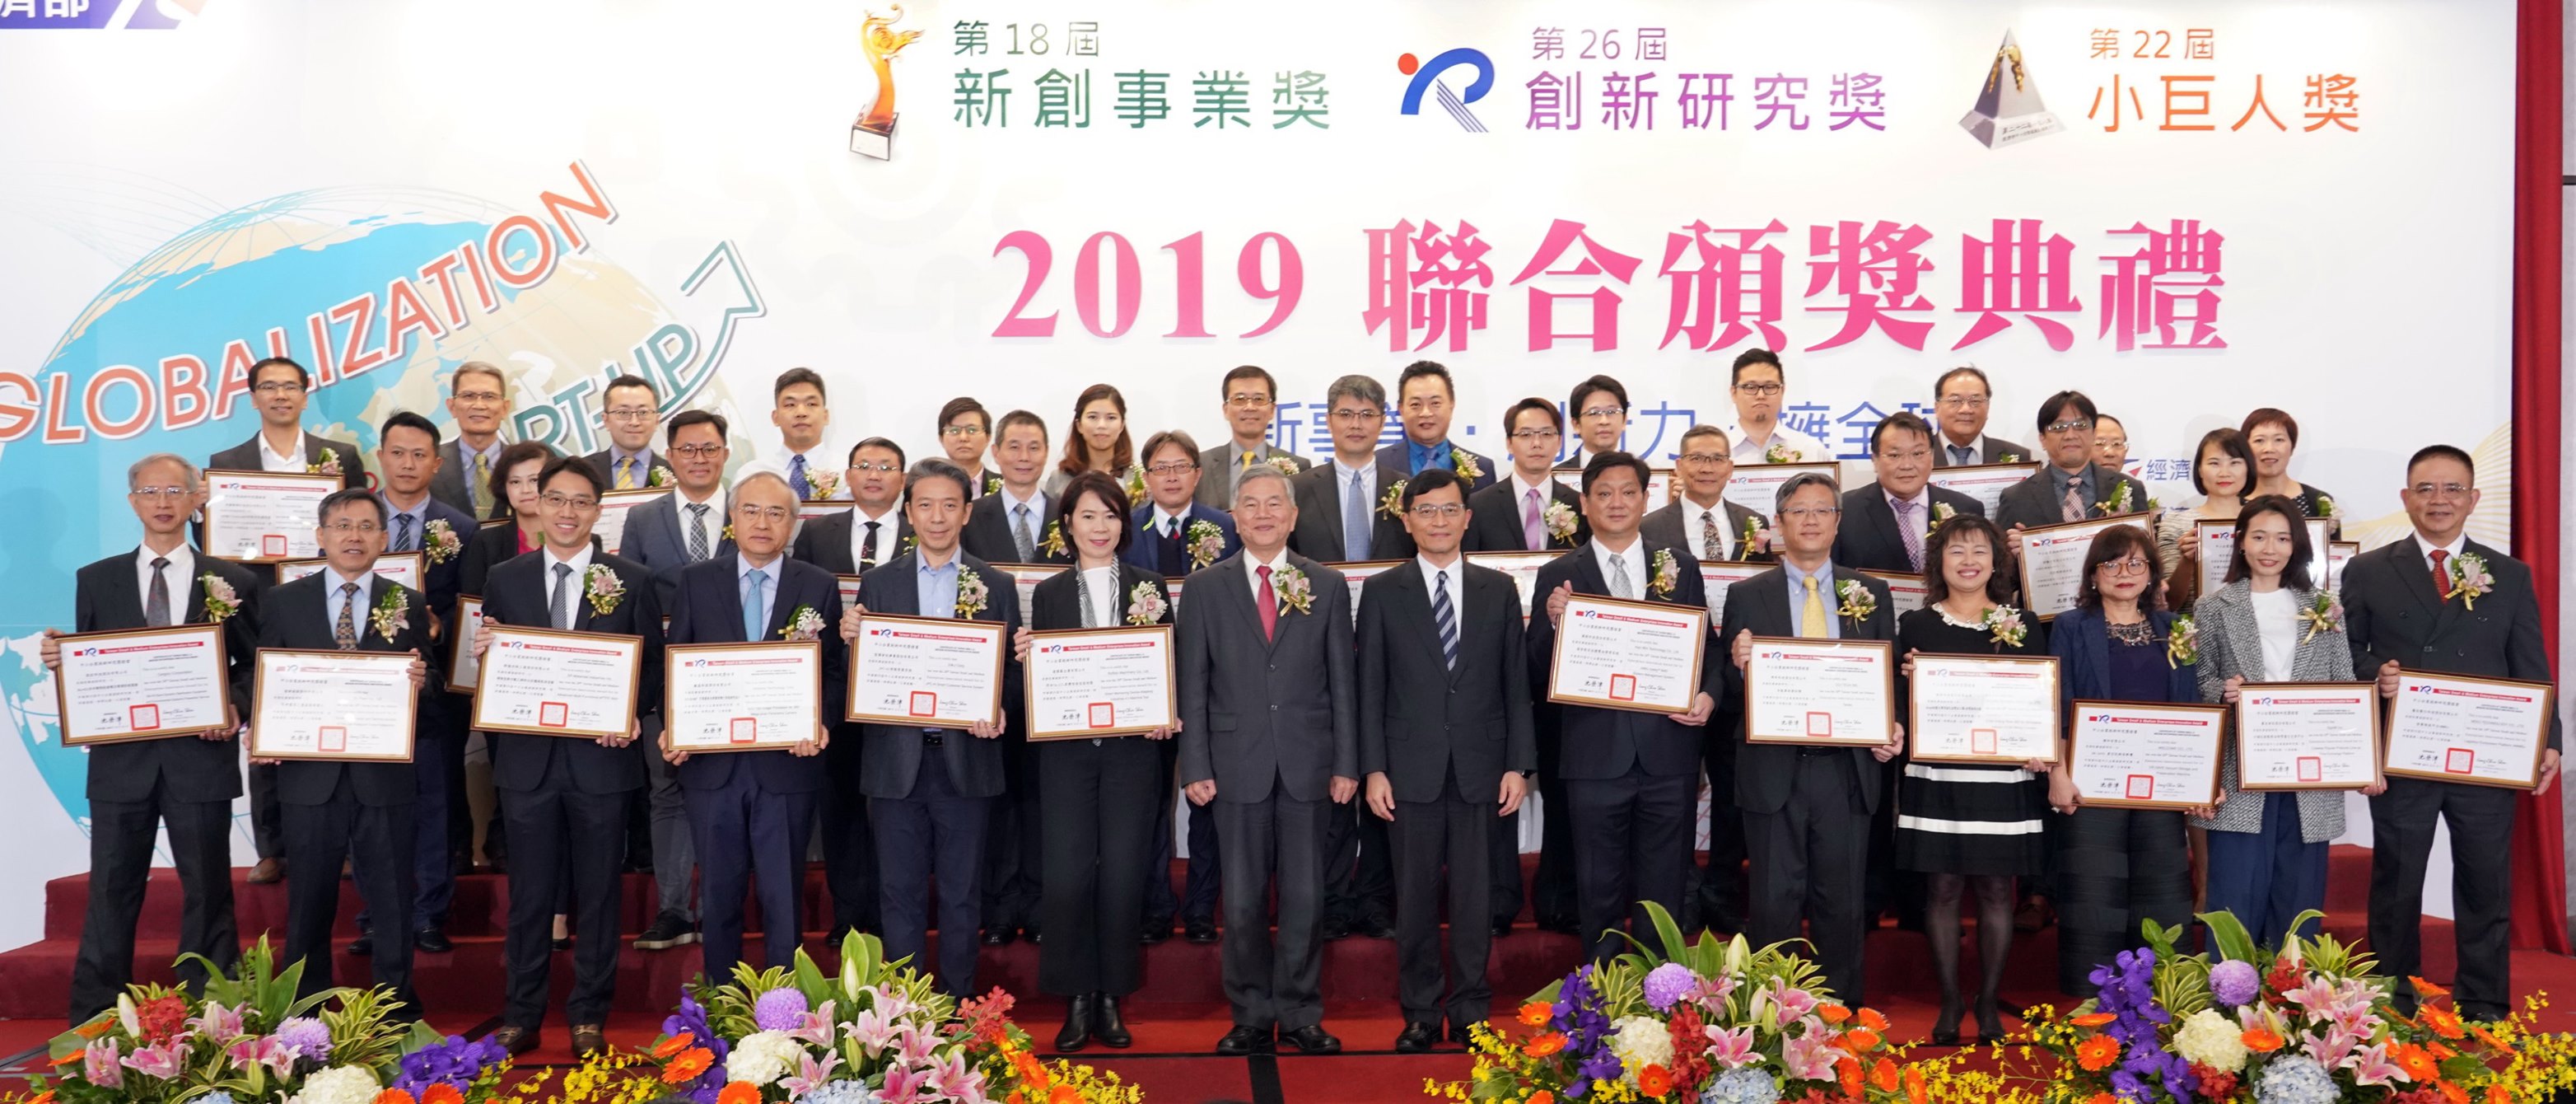 賀！彬騰獲得 2019年第26屆中小企業創新研究獎